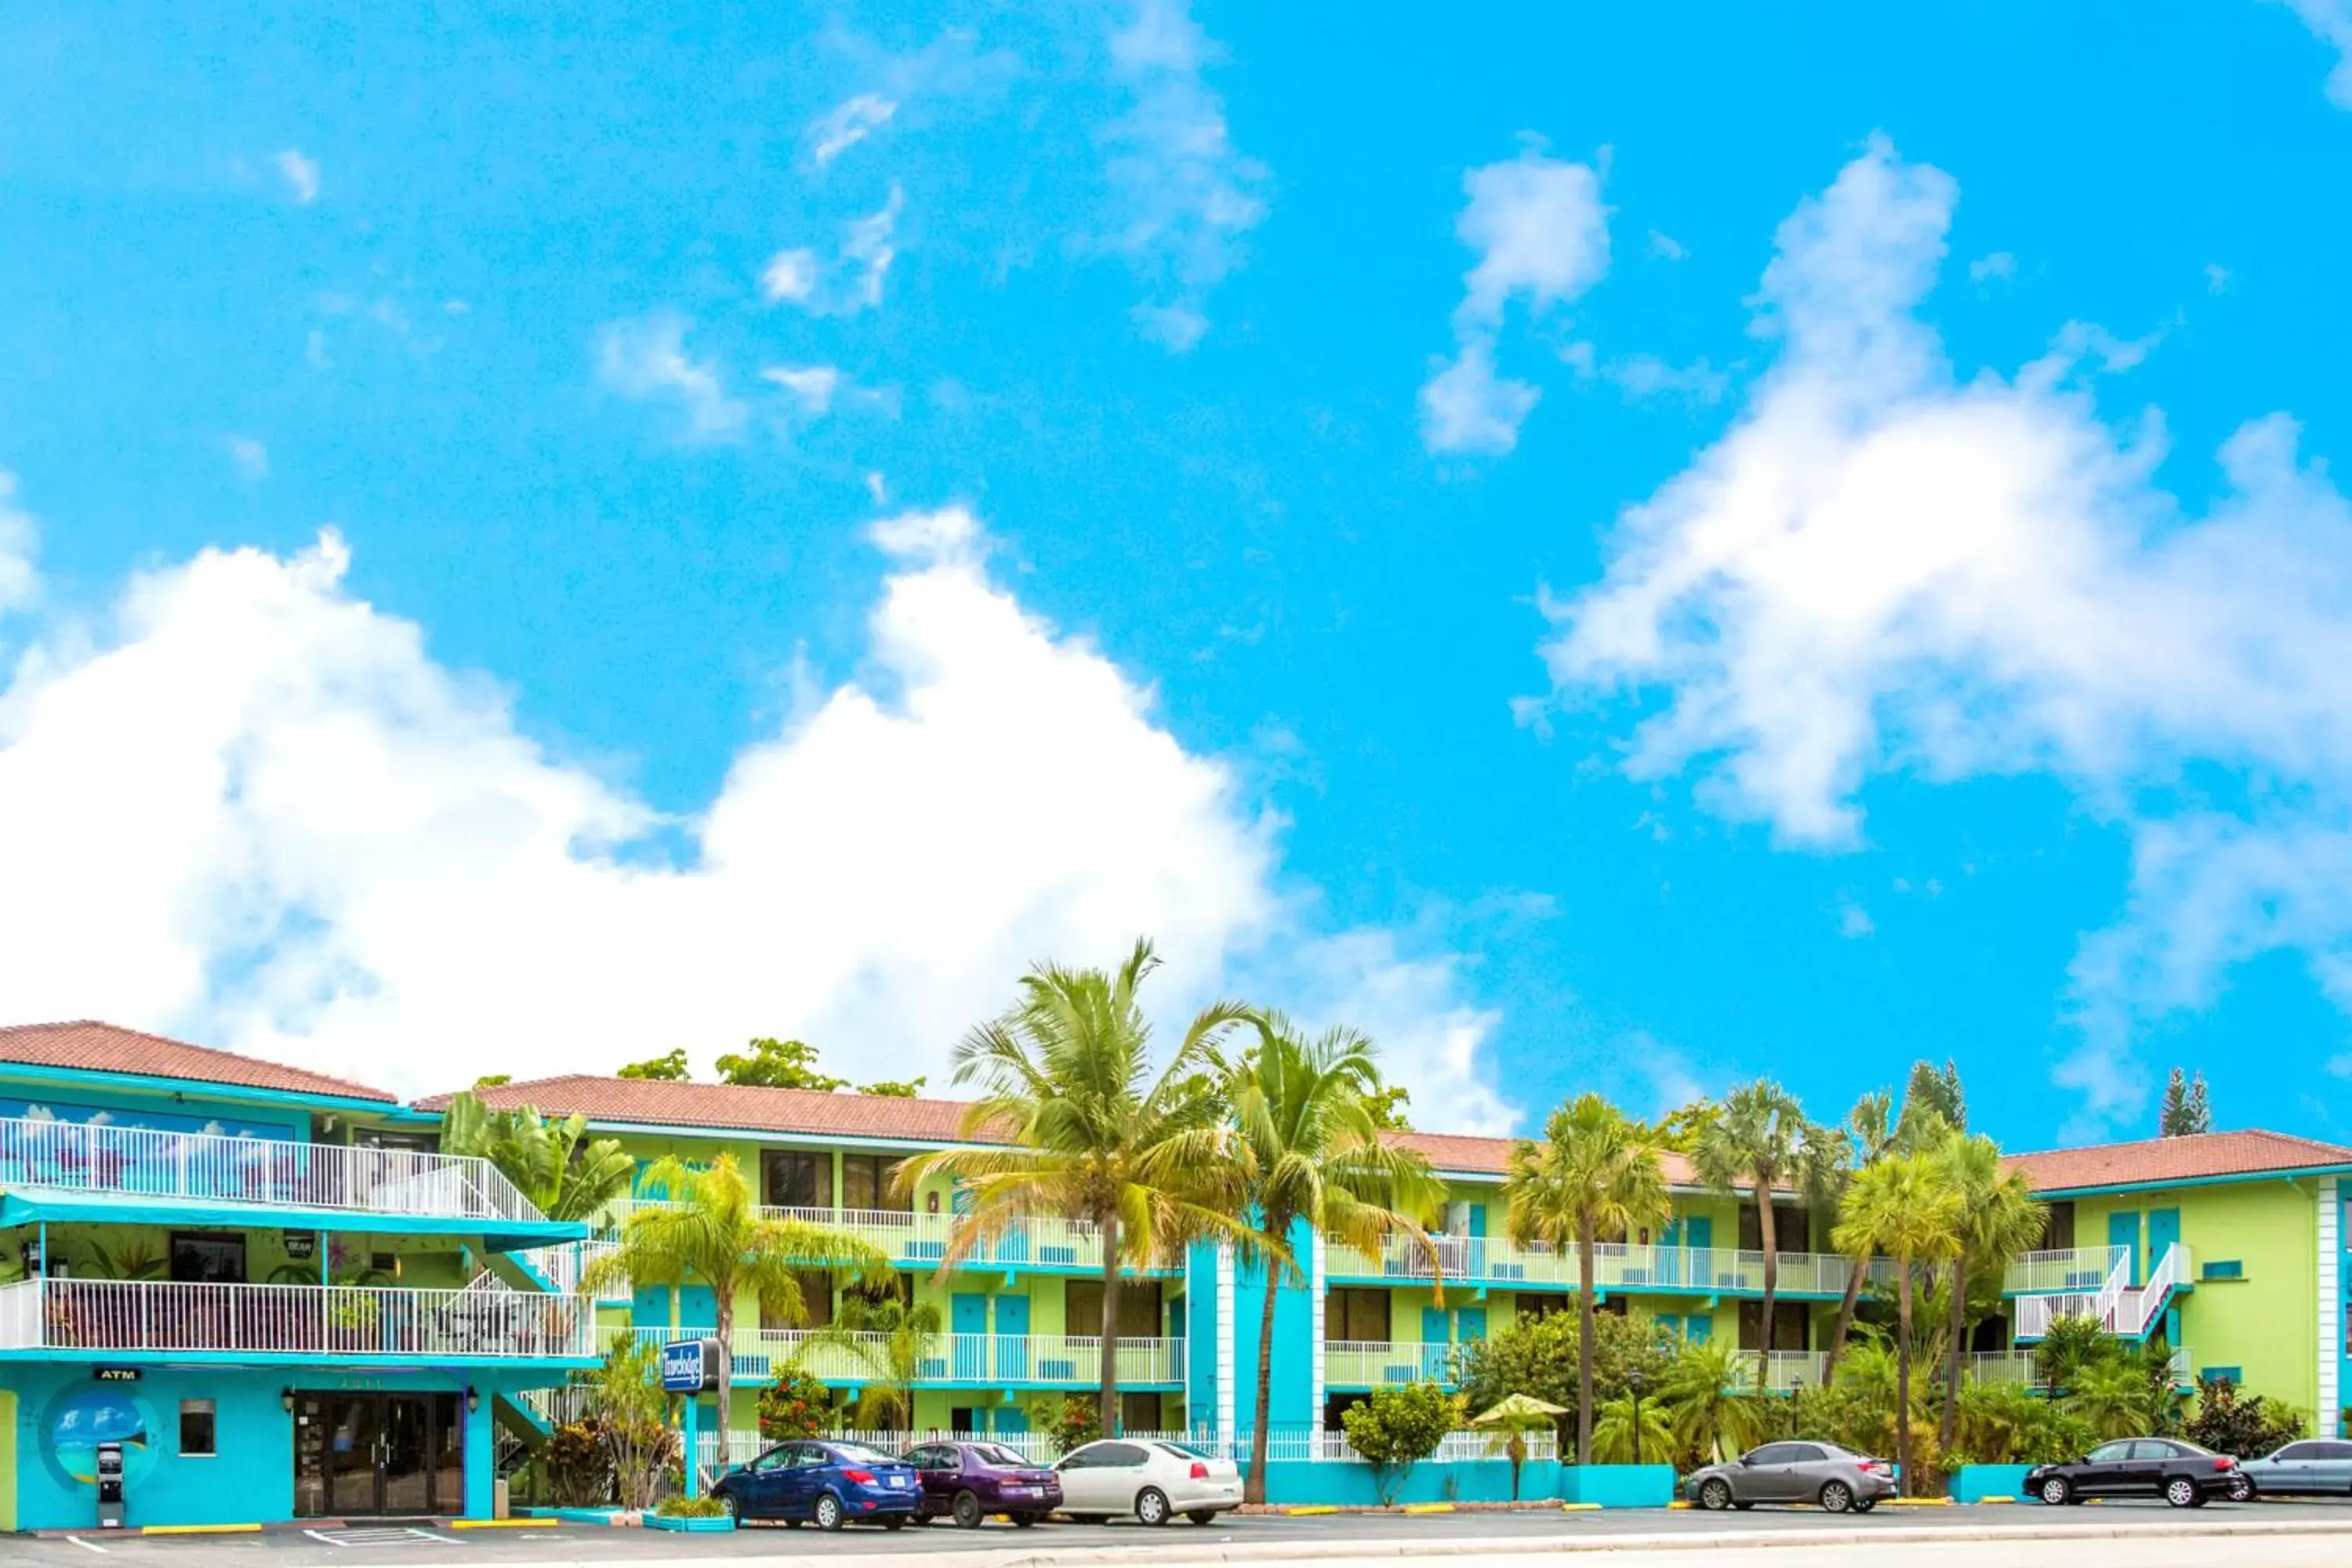 Facade/entrance, Property Building in Ocean Reef Hotel